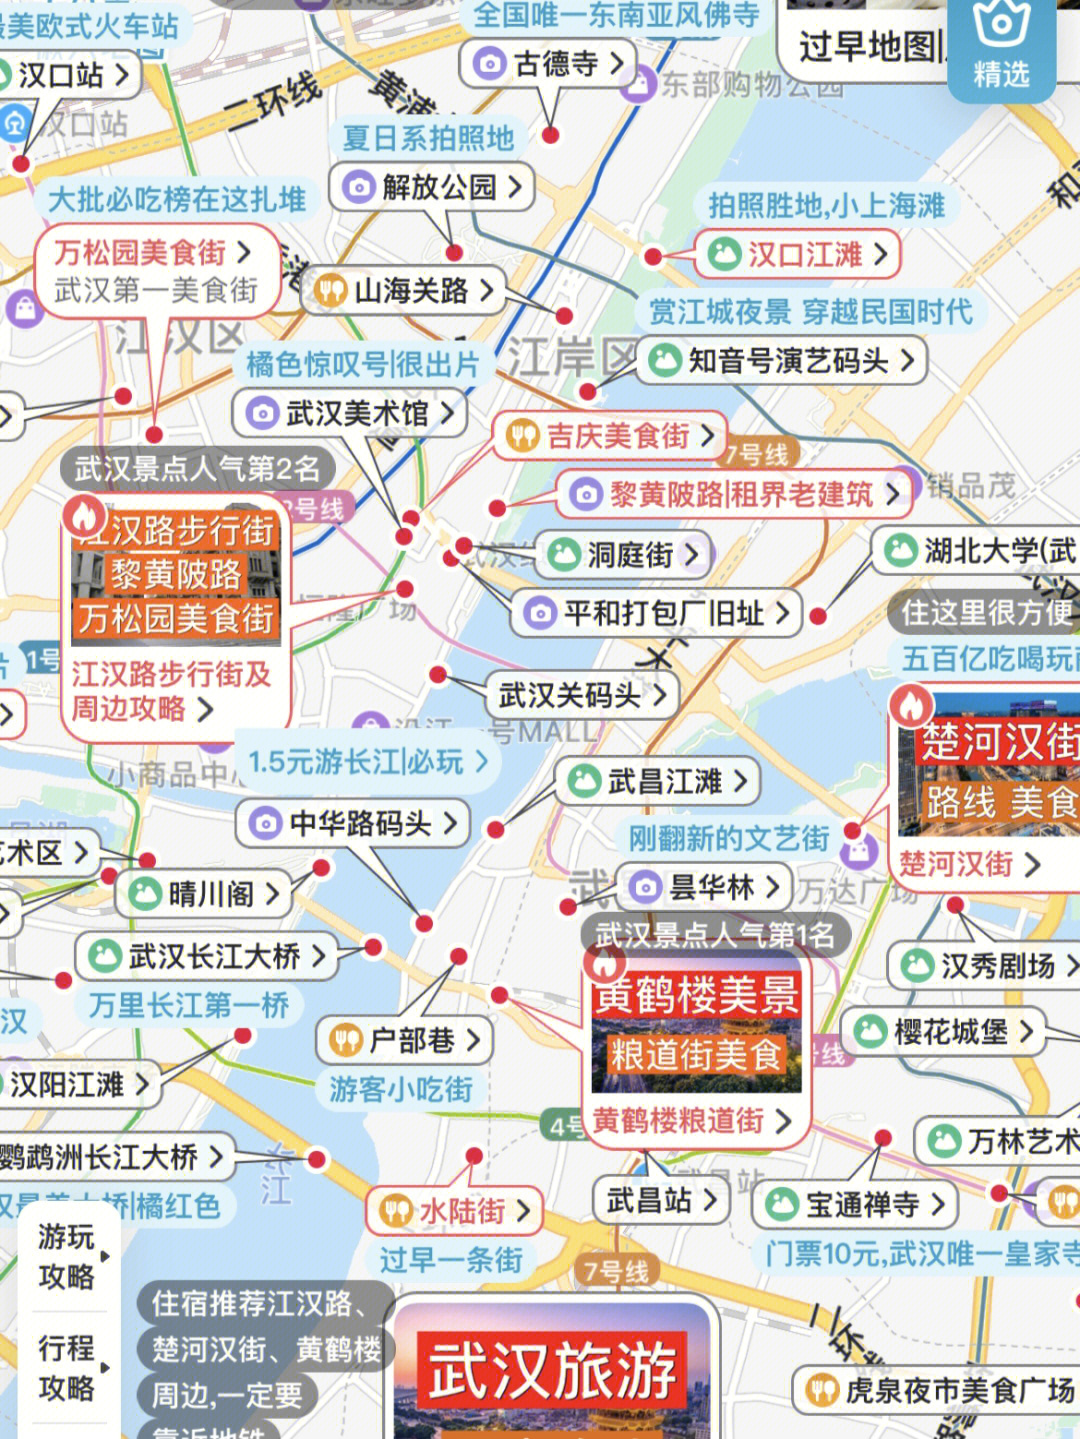 武汉大多数有名景点打卡标记上地图92地点点开就是旅行者们在此打卡